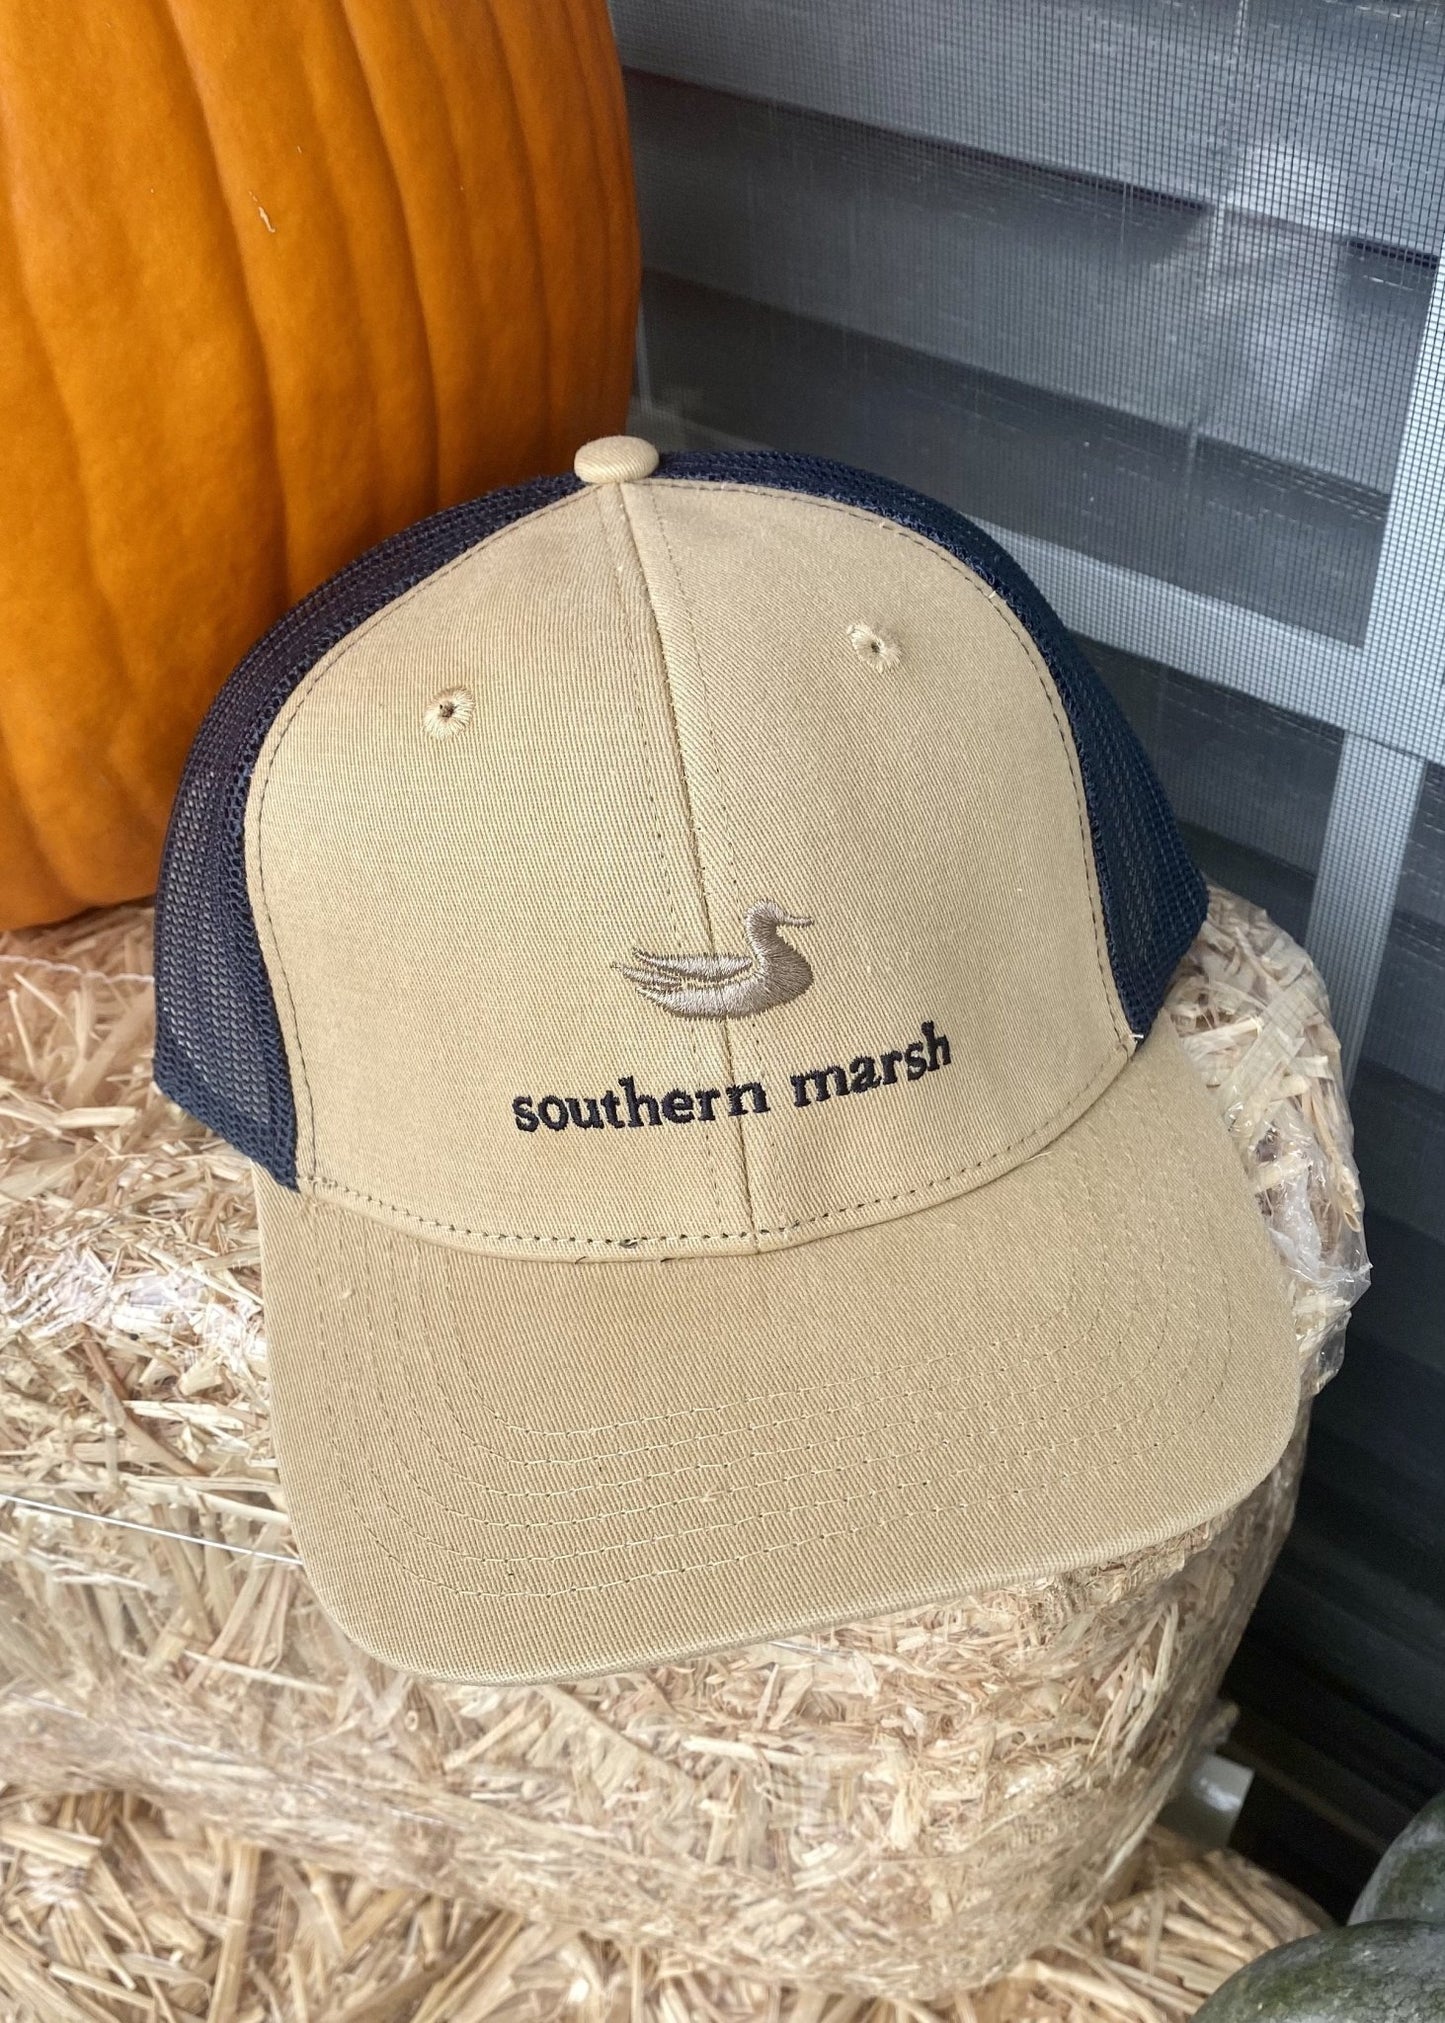 Southern Marsh Trucker Hat - Classic - Khaki - Jimberly's Boutique